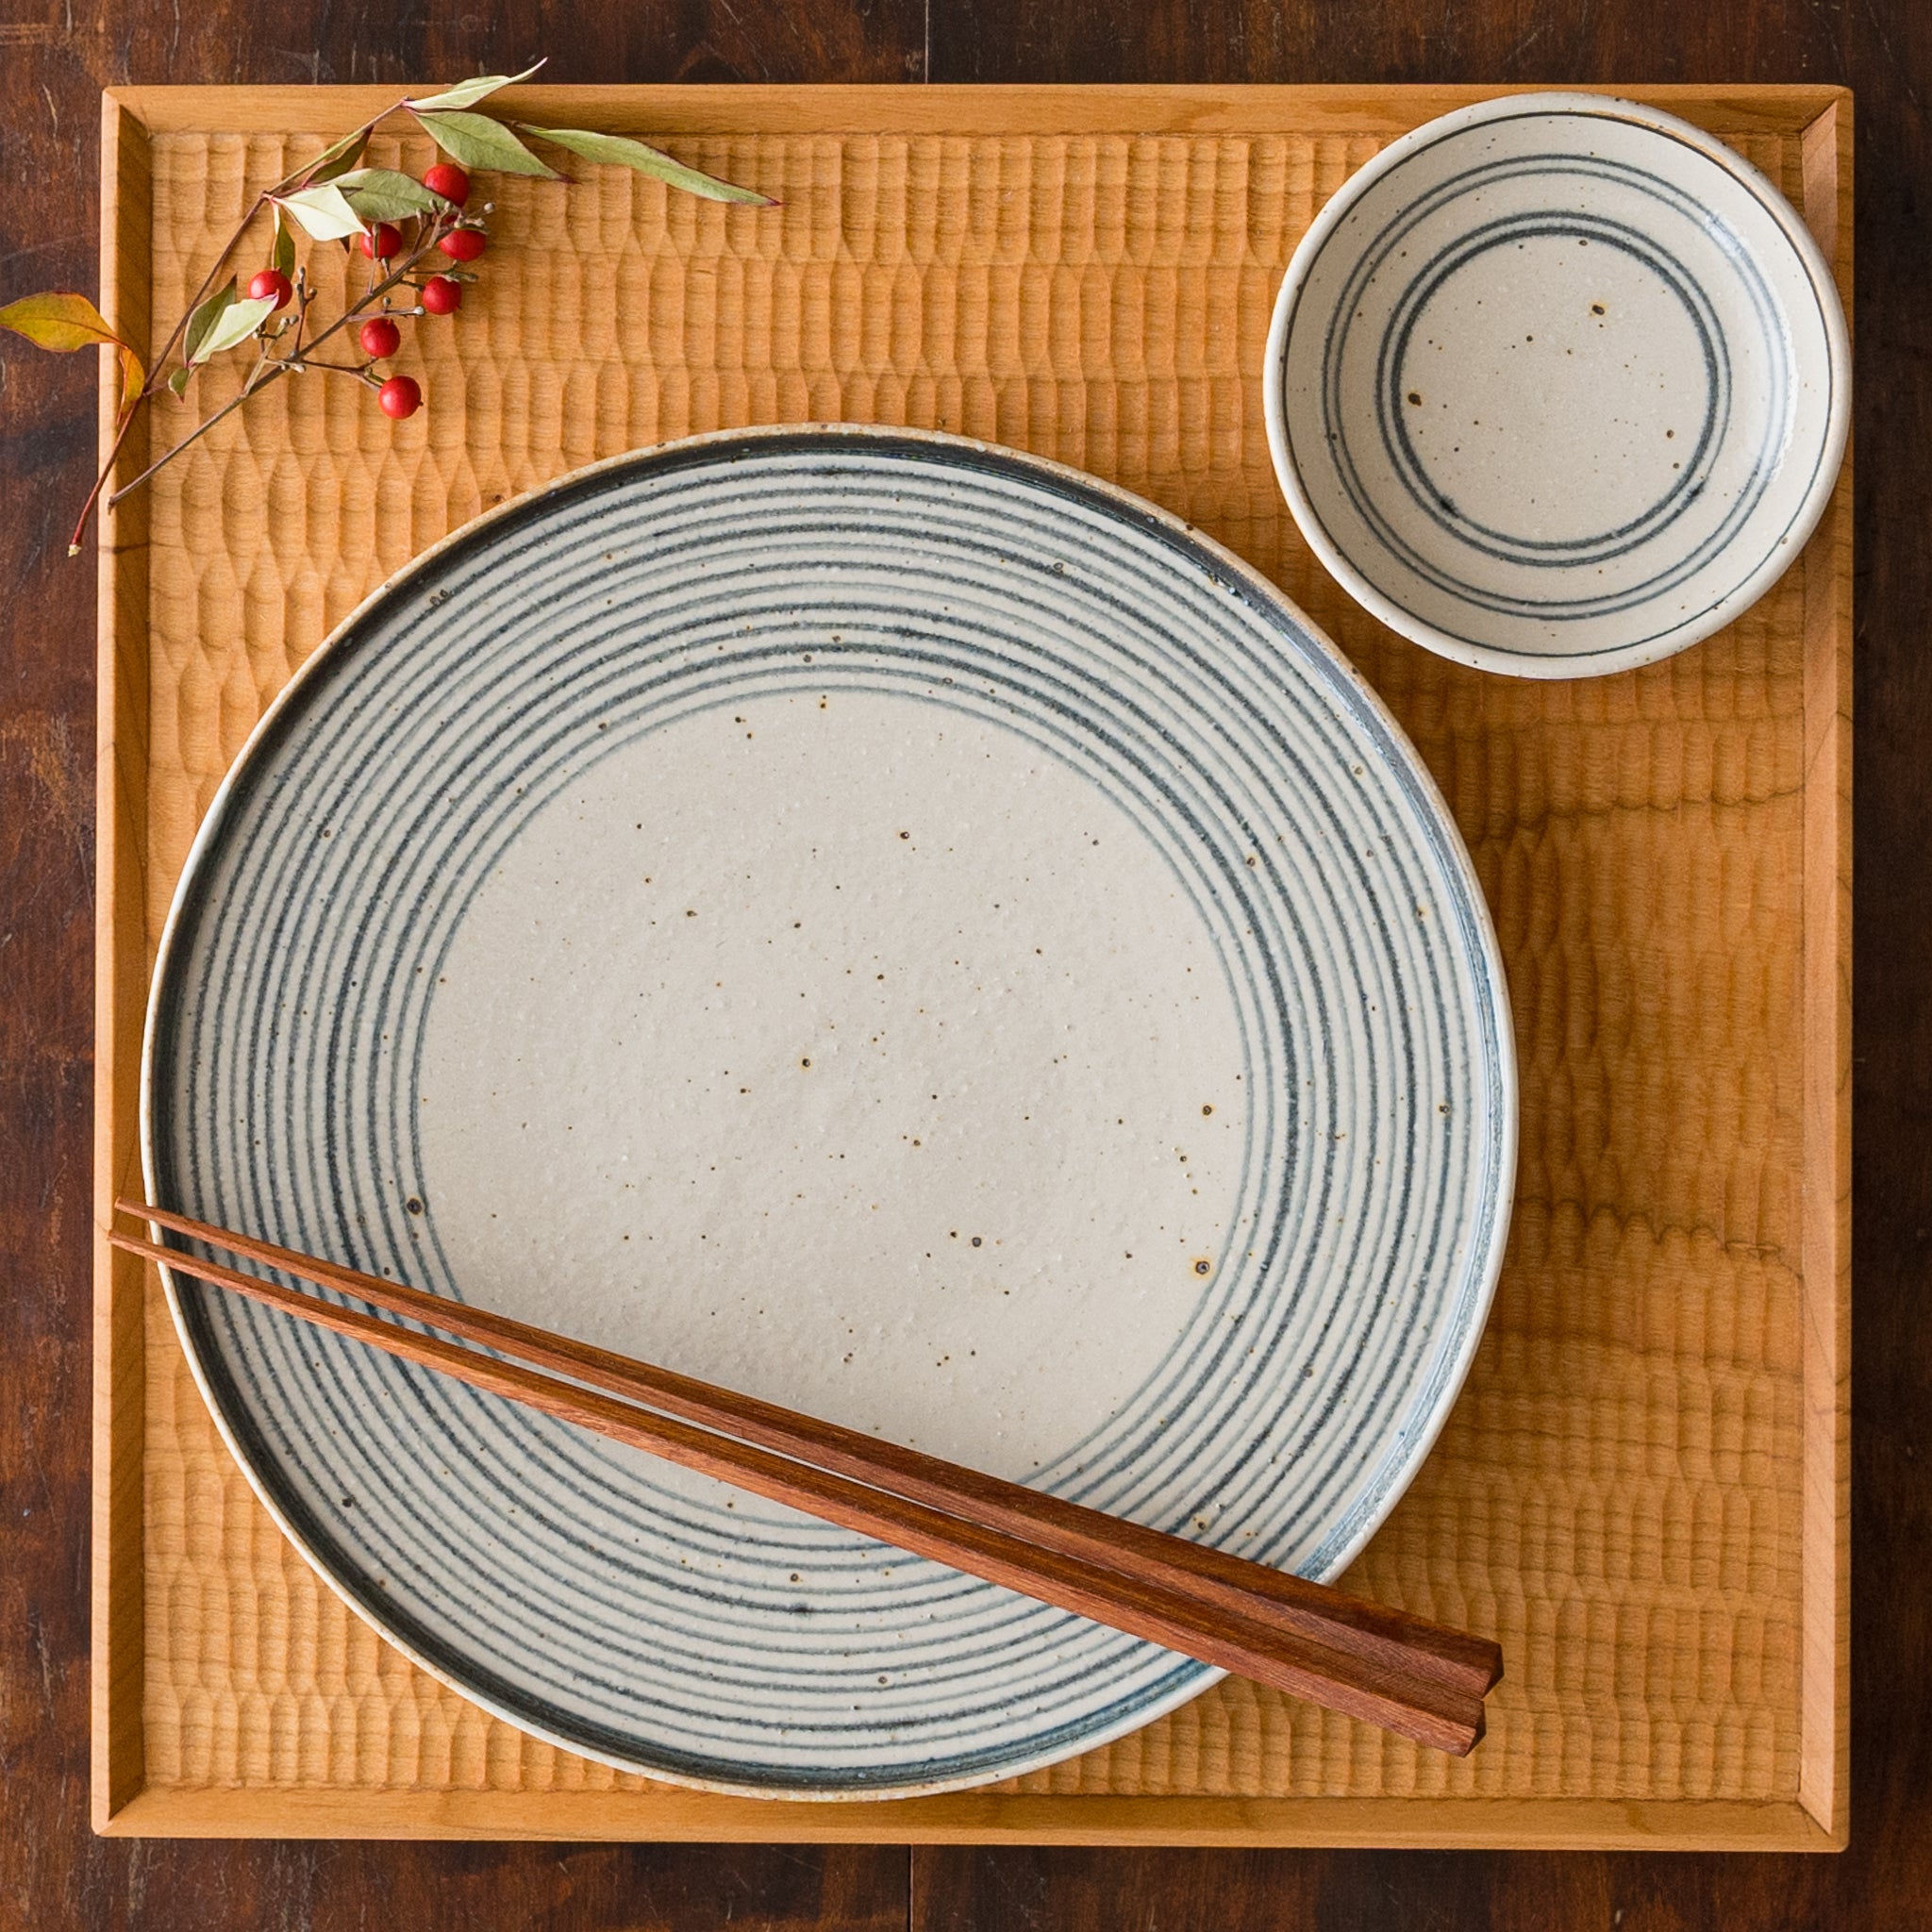 盛り付けたお料理が素敵に引き立つ冨本大輔さんの灰釉染付7寸平皿と3寸皿